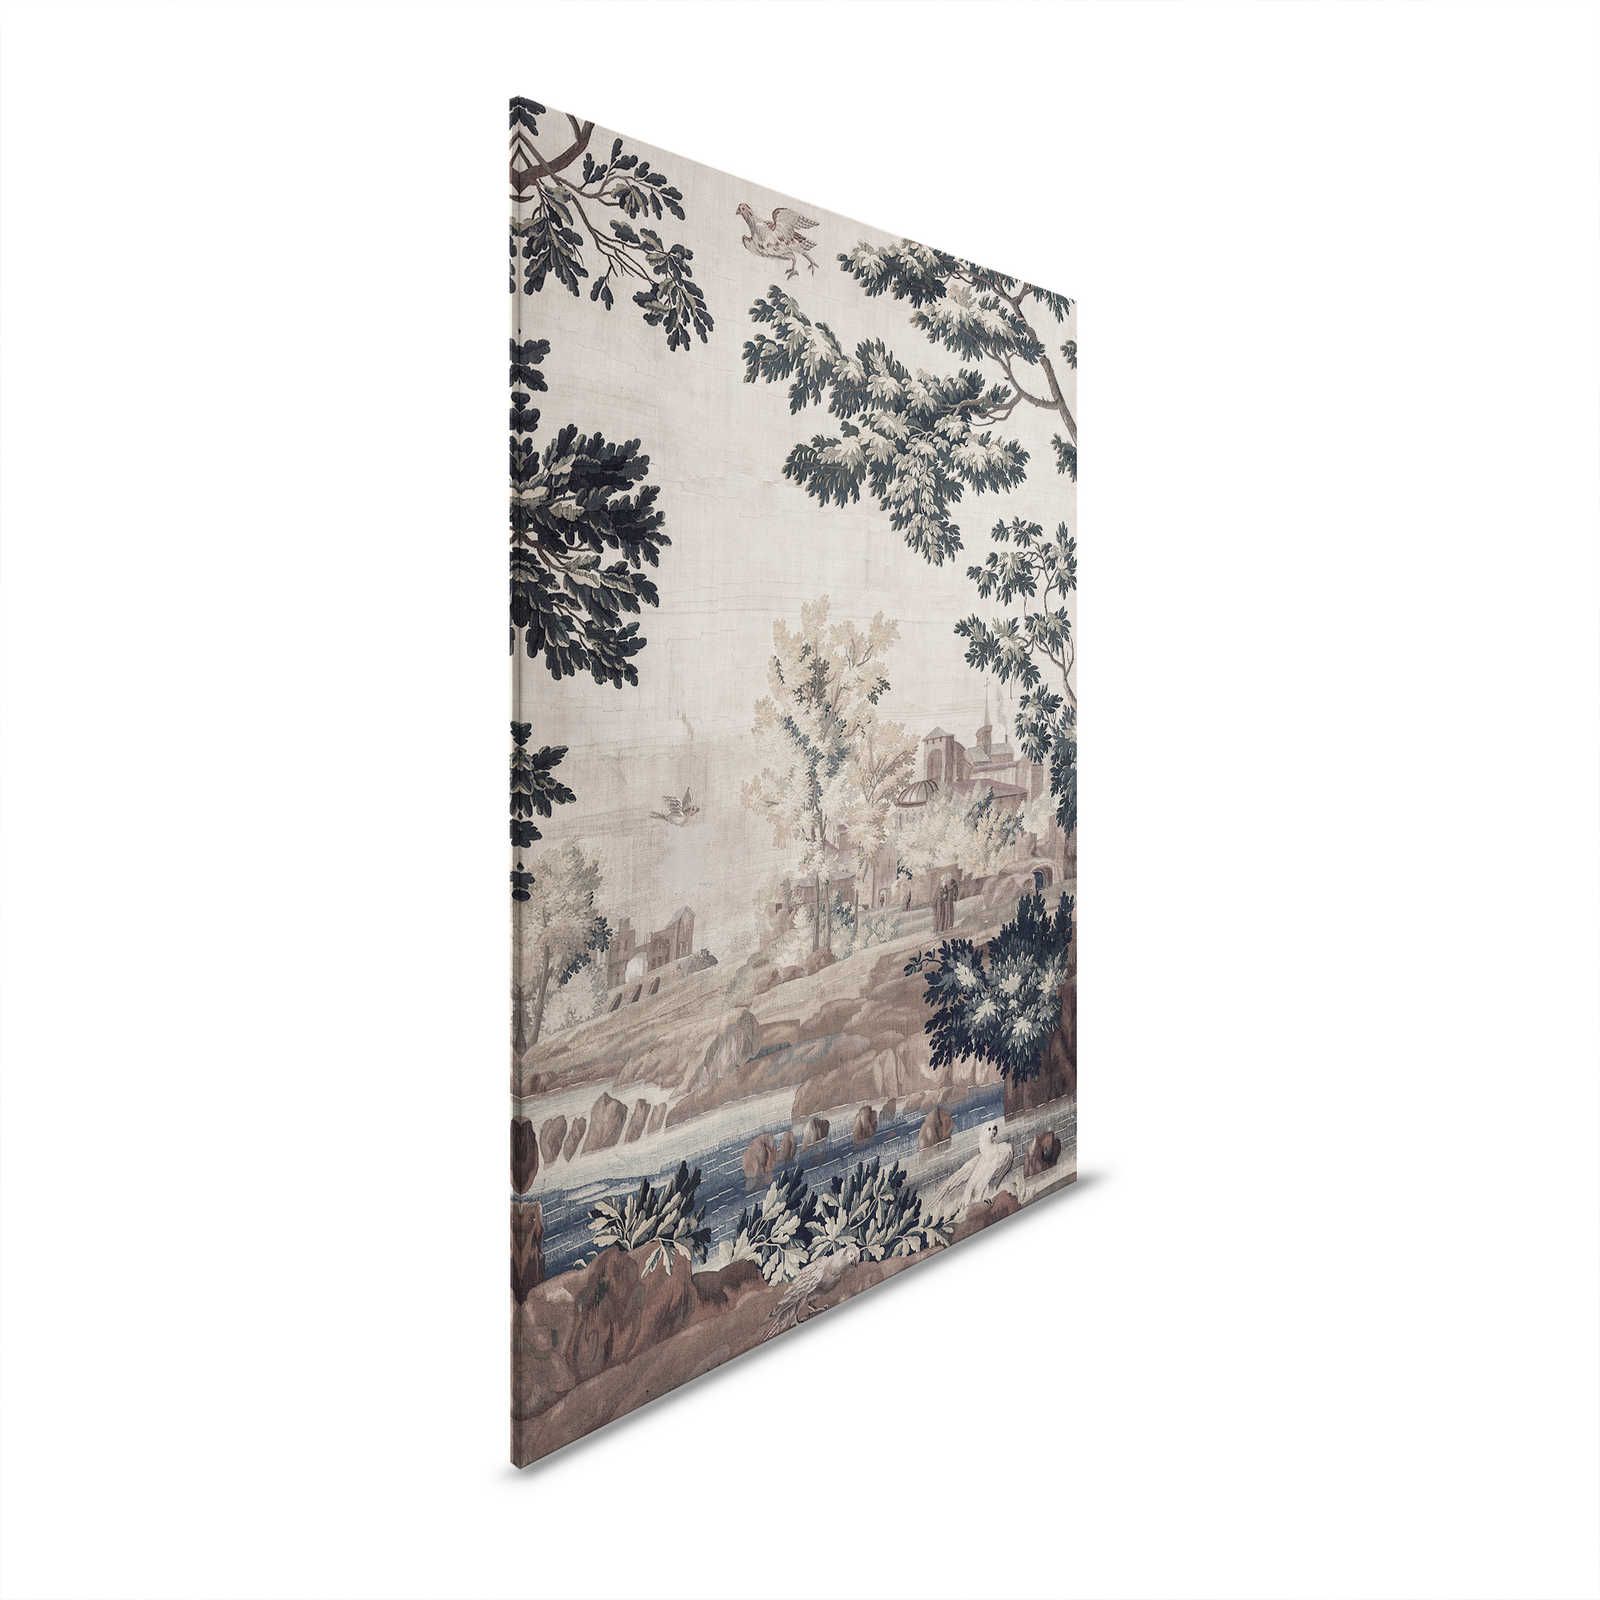 Gobelin Gallery 1 - Paysage toile tapisserie historique - 0,90 m x 0,60 m
